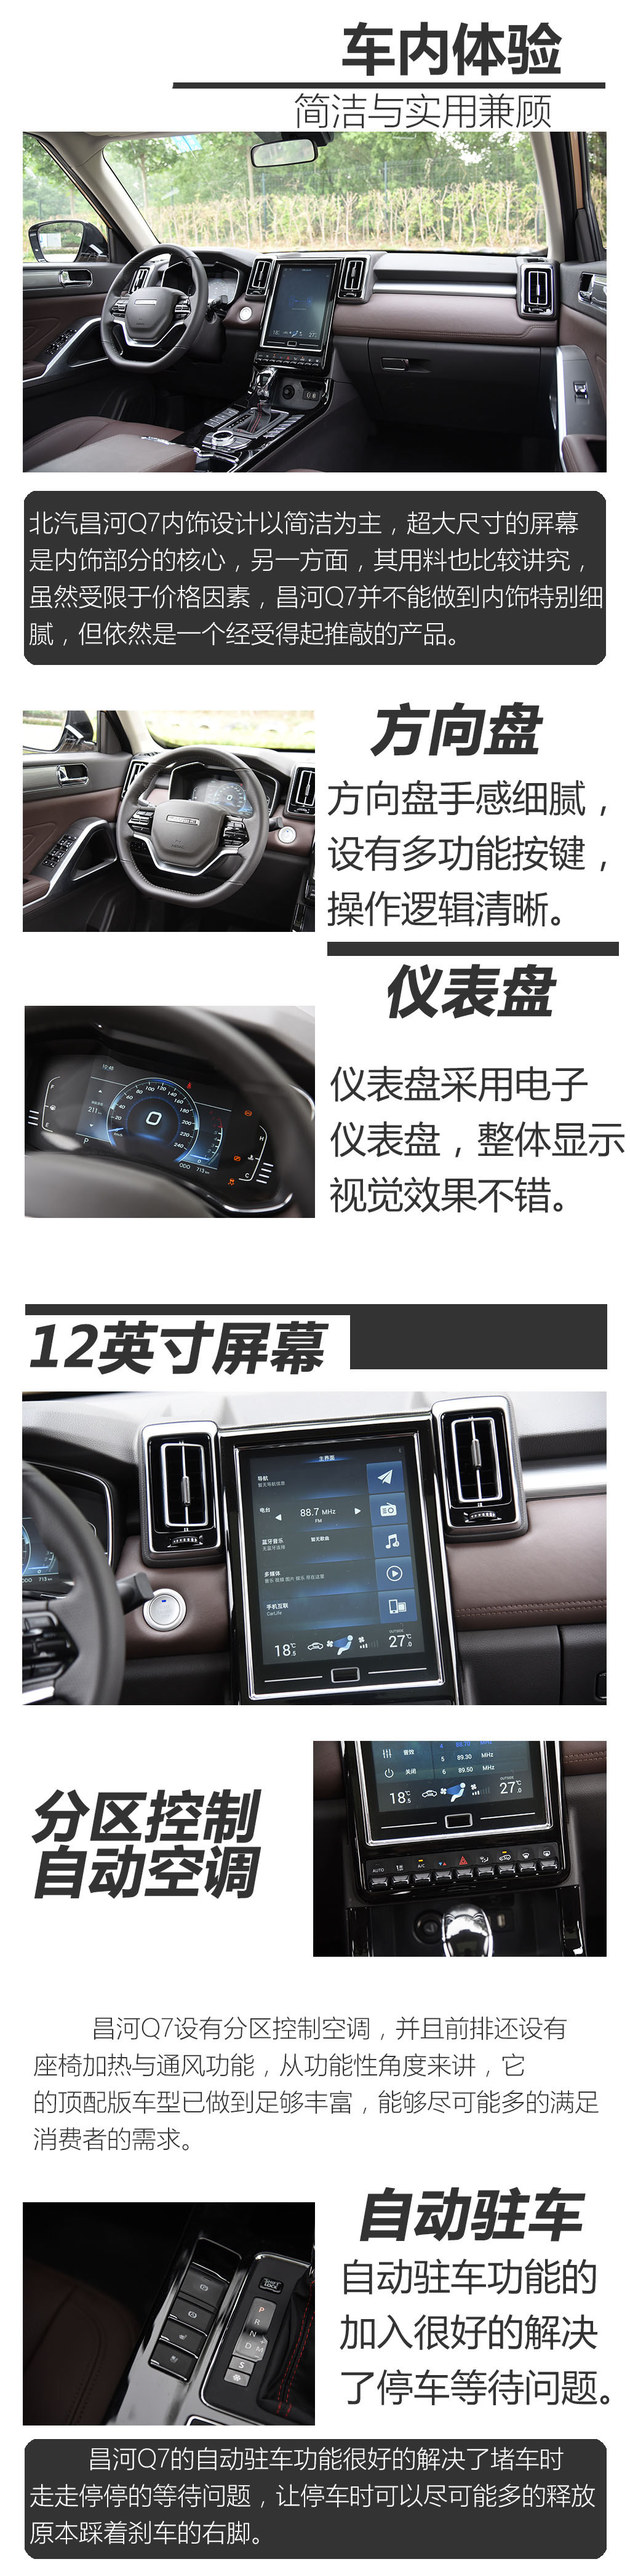 北汽昌河Q7性能测试 高颜值务实自主SUV